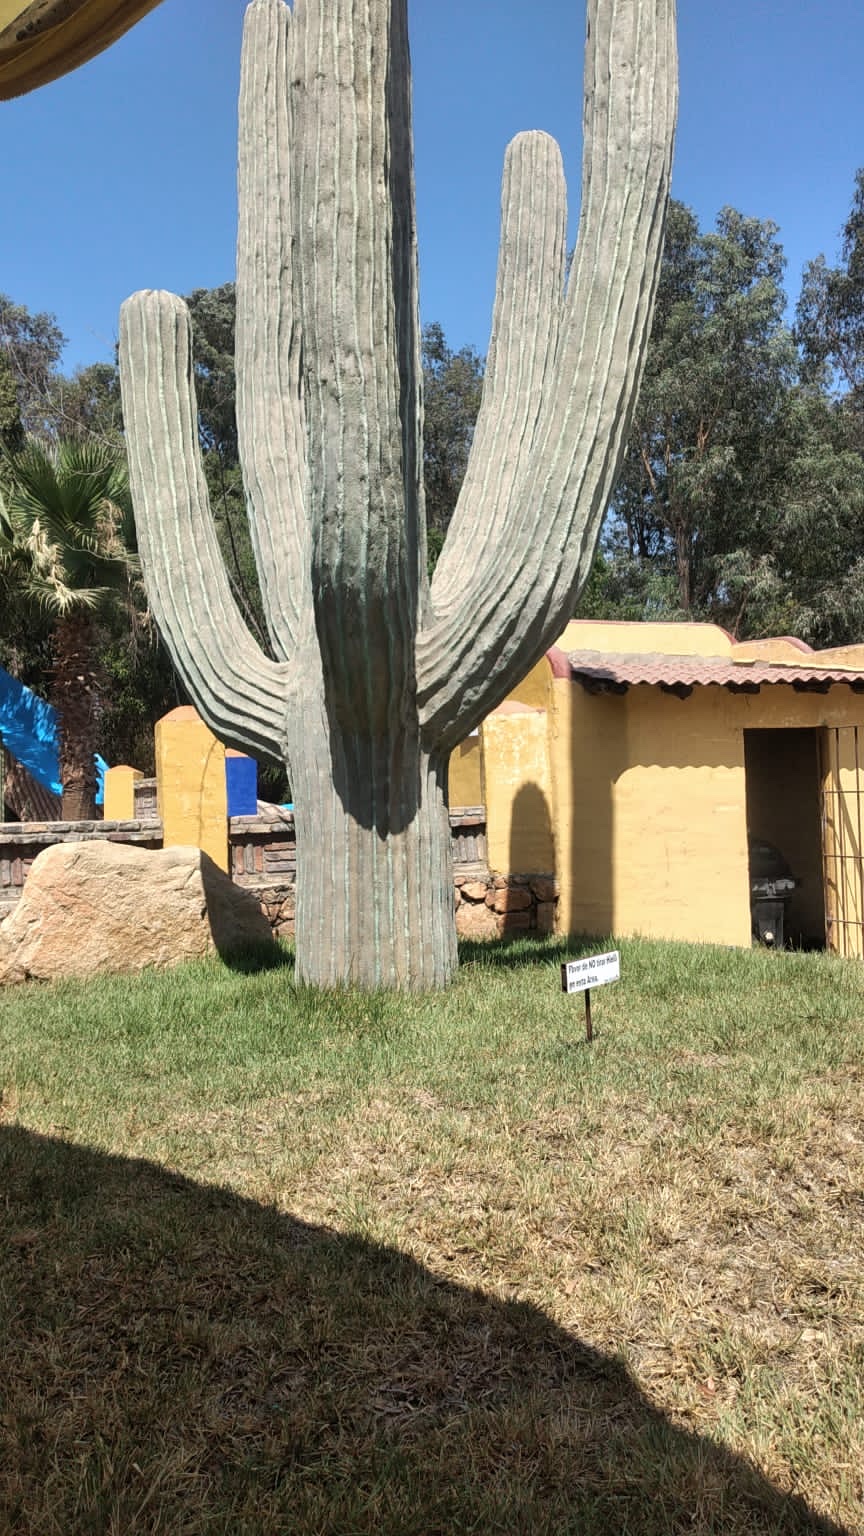 Los Cactus | Carretera Tecate-Tijuana Km 8, 21503 Tecate, B.C., Mexico | Phone: 665 654 0562